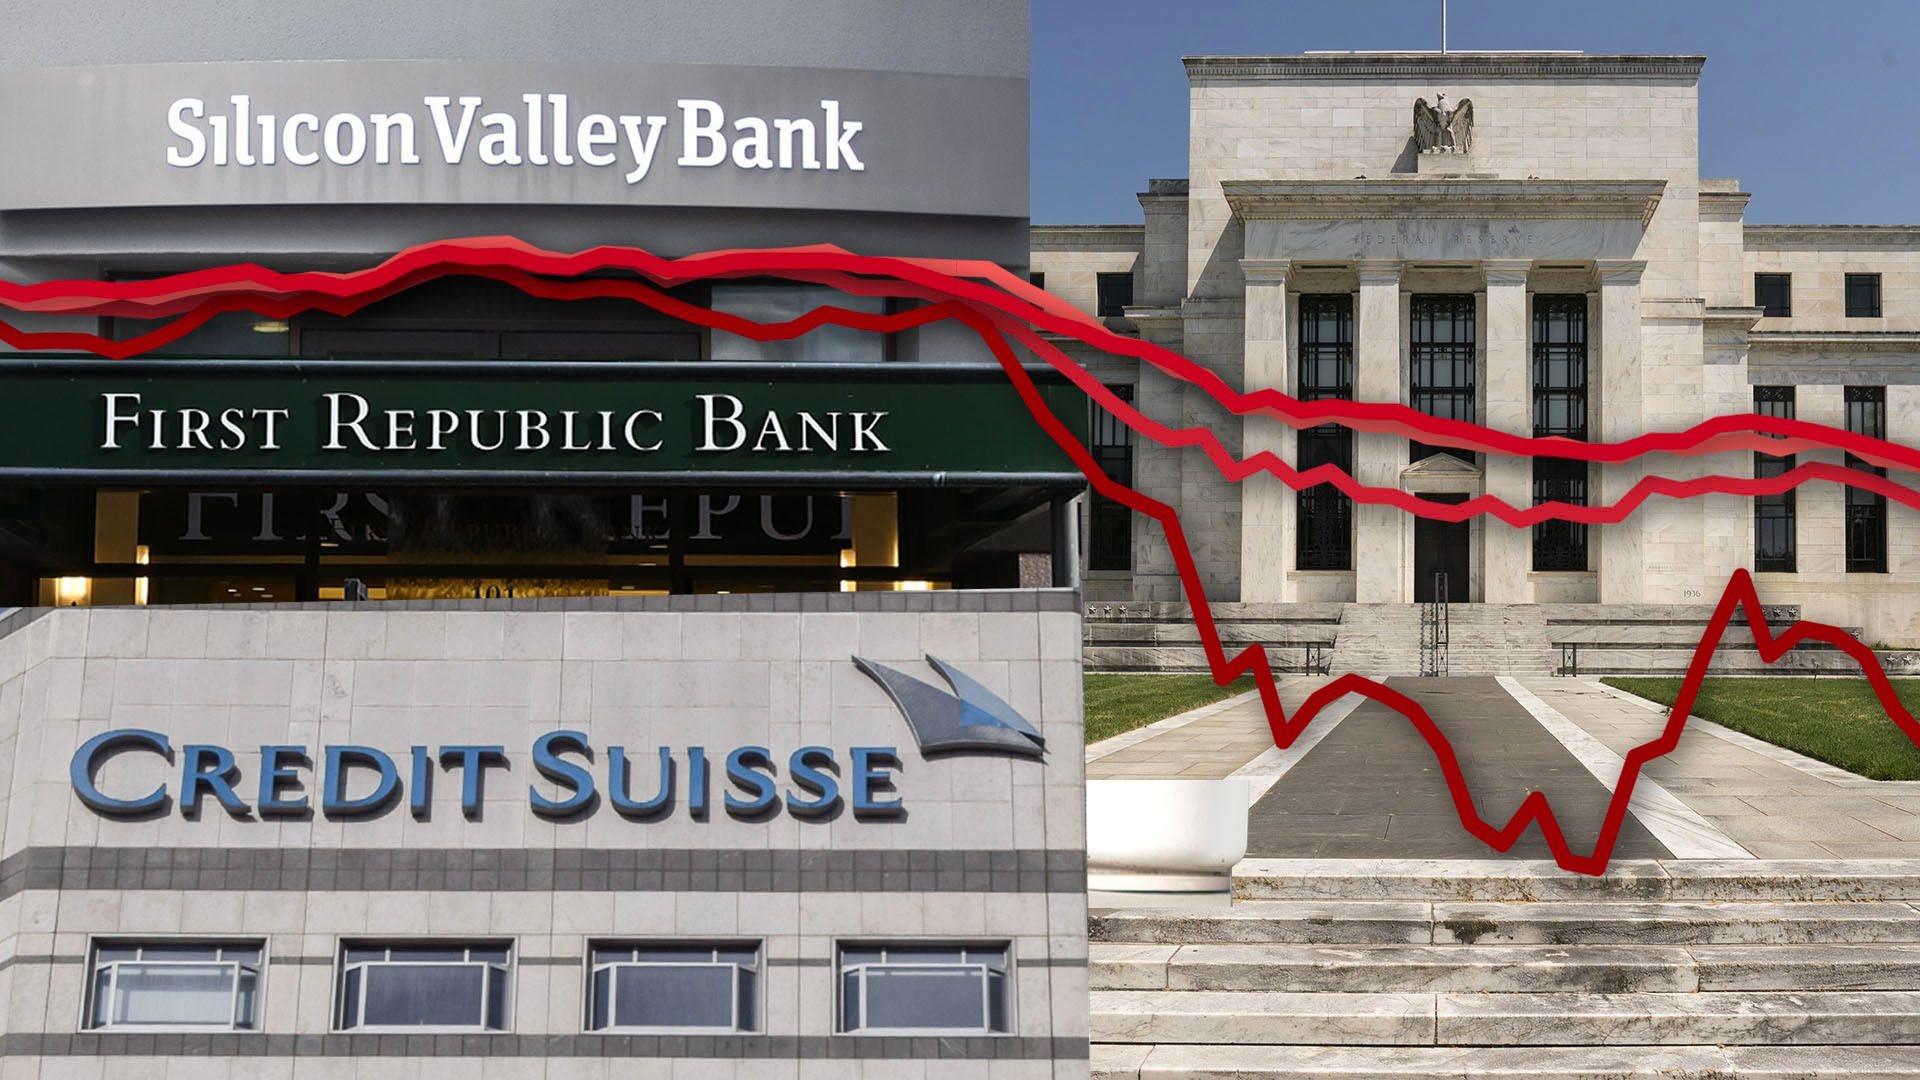 Paul Volcker đánh bại lạm phát, Ben Bernanke cứu sống các ngân hàng, liệu ông Powell có thể làm được cả hai? - Ảnh 3.